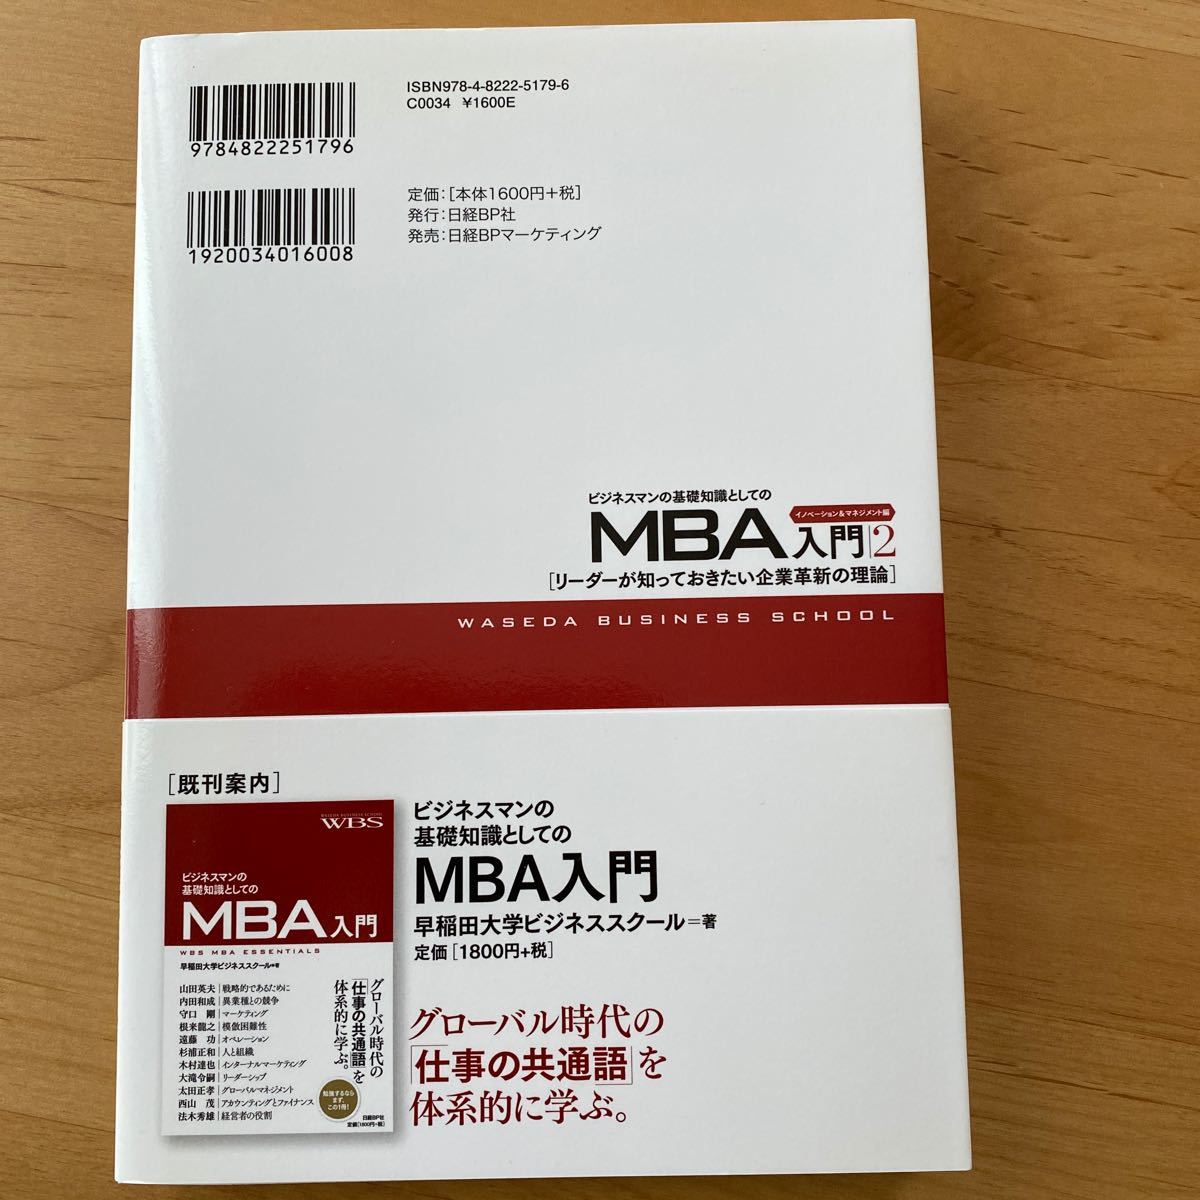 MBA入門2 イノベーション&マネジメント編